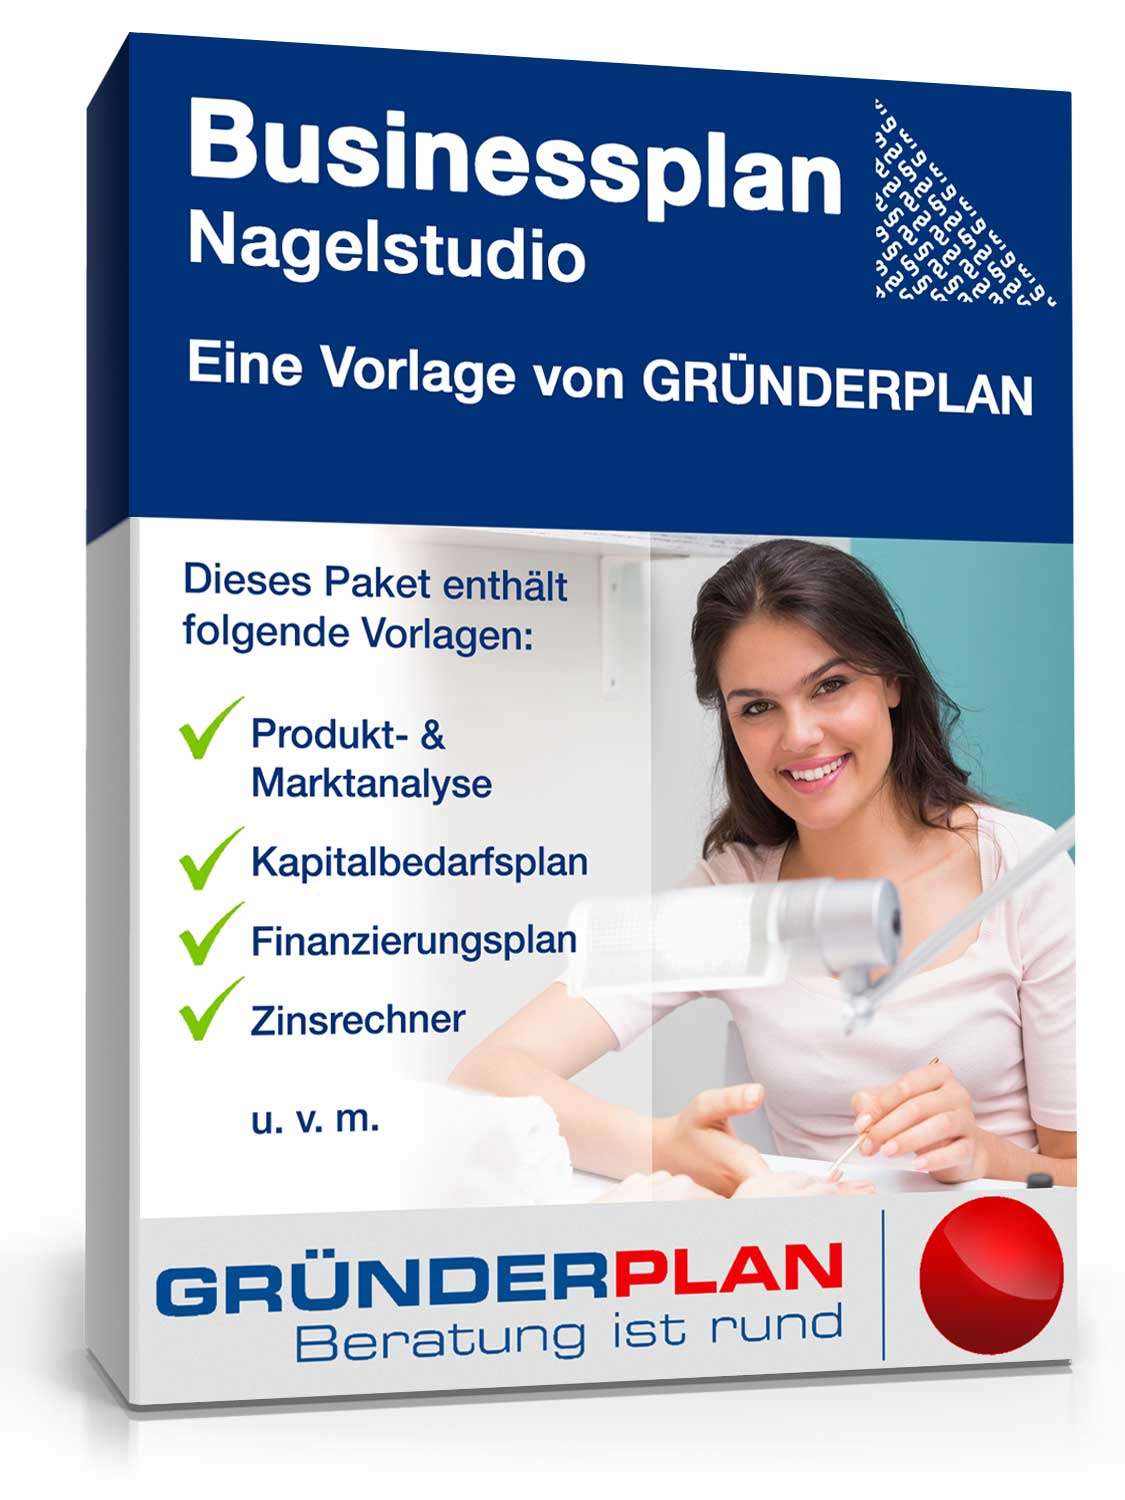 Hauptbild des Produkts: Businessplan Nagelstudio von Gründerplan